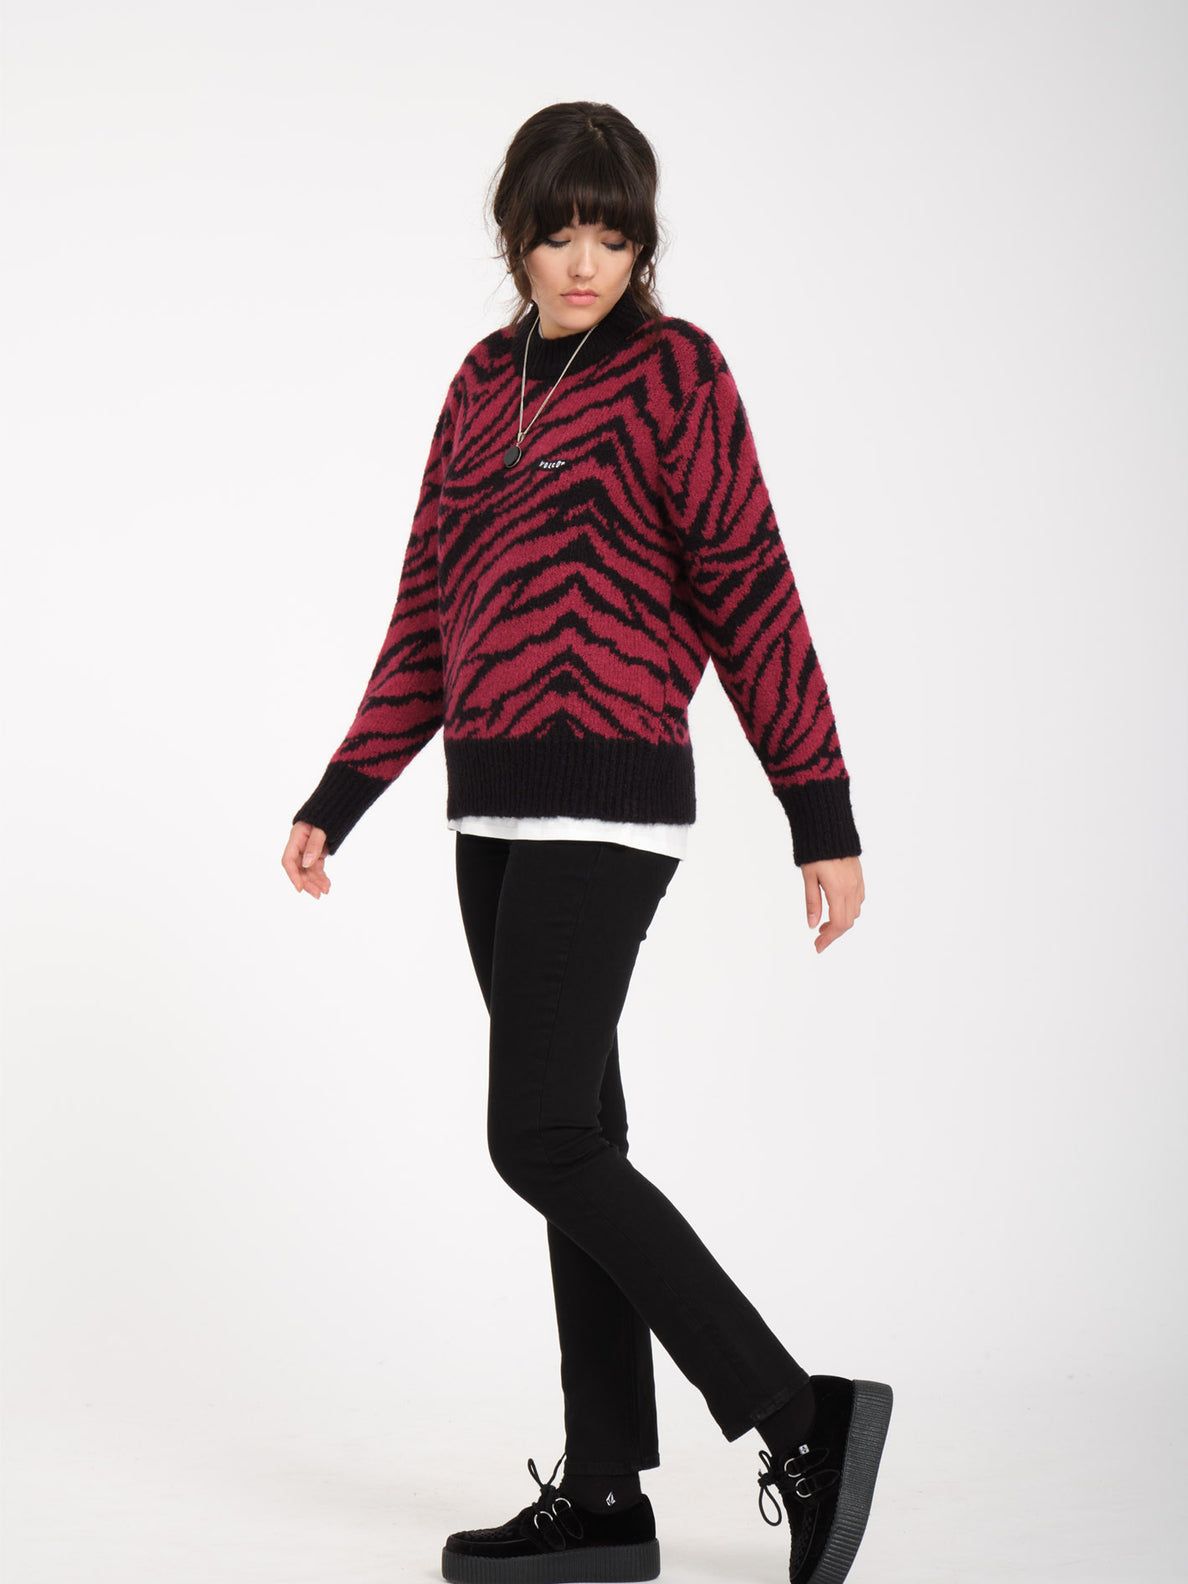 Zebra Sweater - WINE